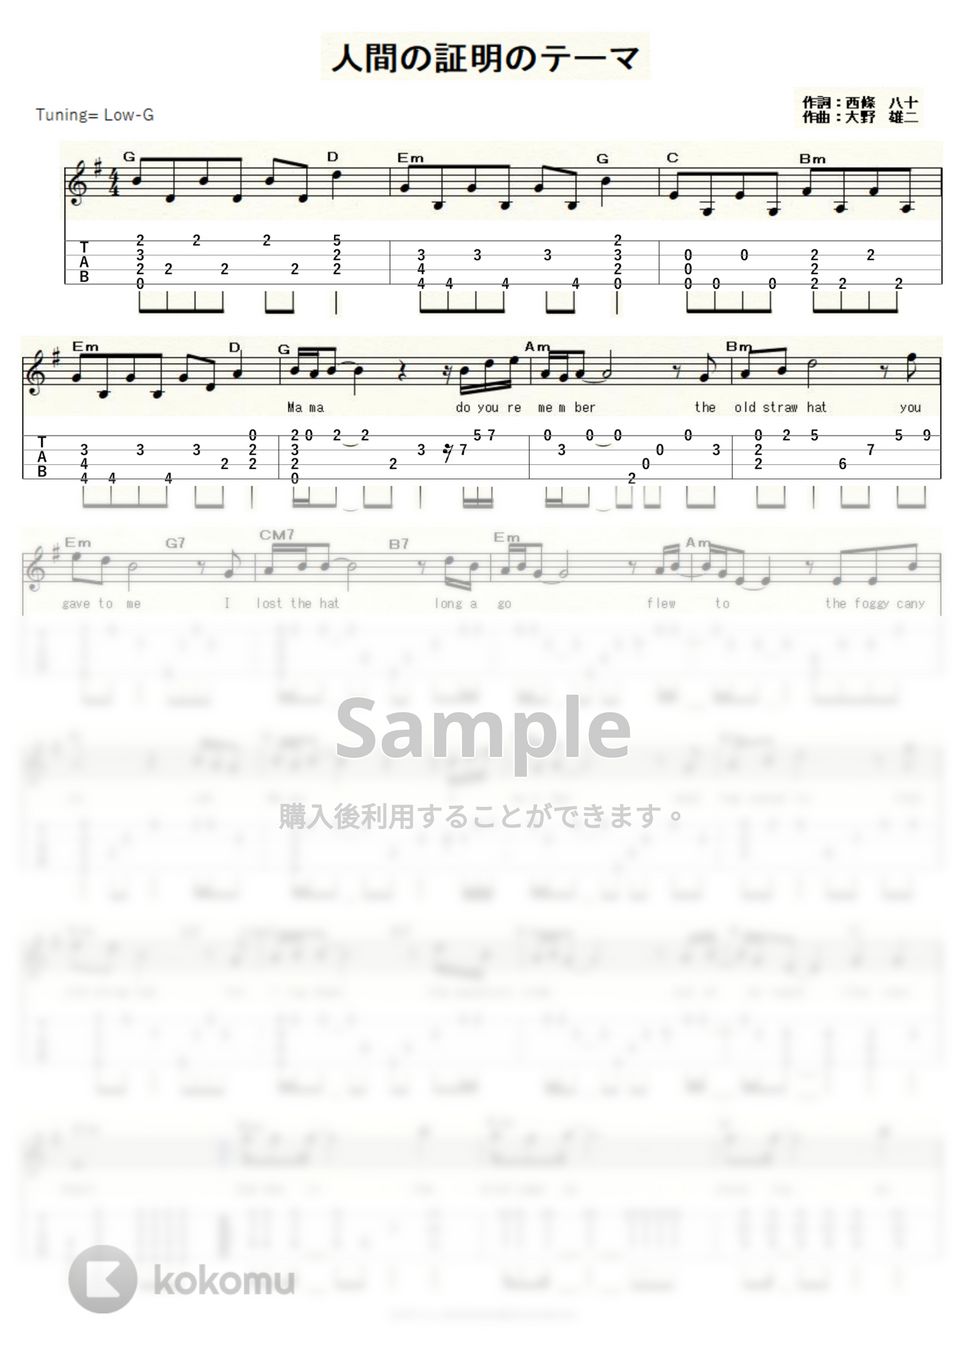 ジョー山中 - 人間の証明のテーマ (ｳｸﾚﾚｿﾛ/Low-G/中級) by ukulelepapa